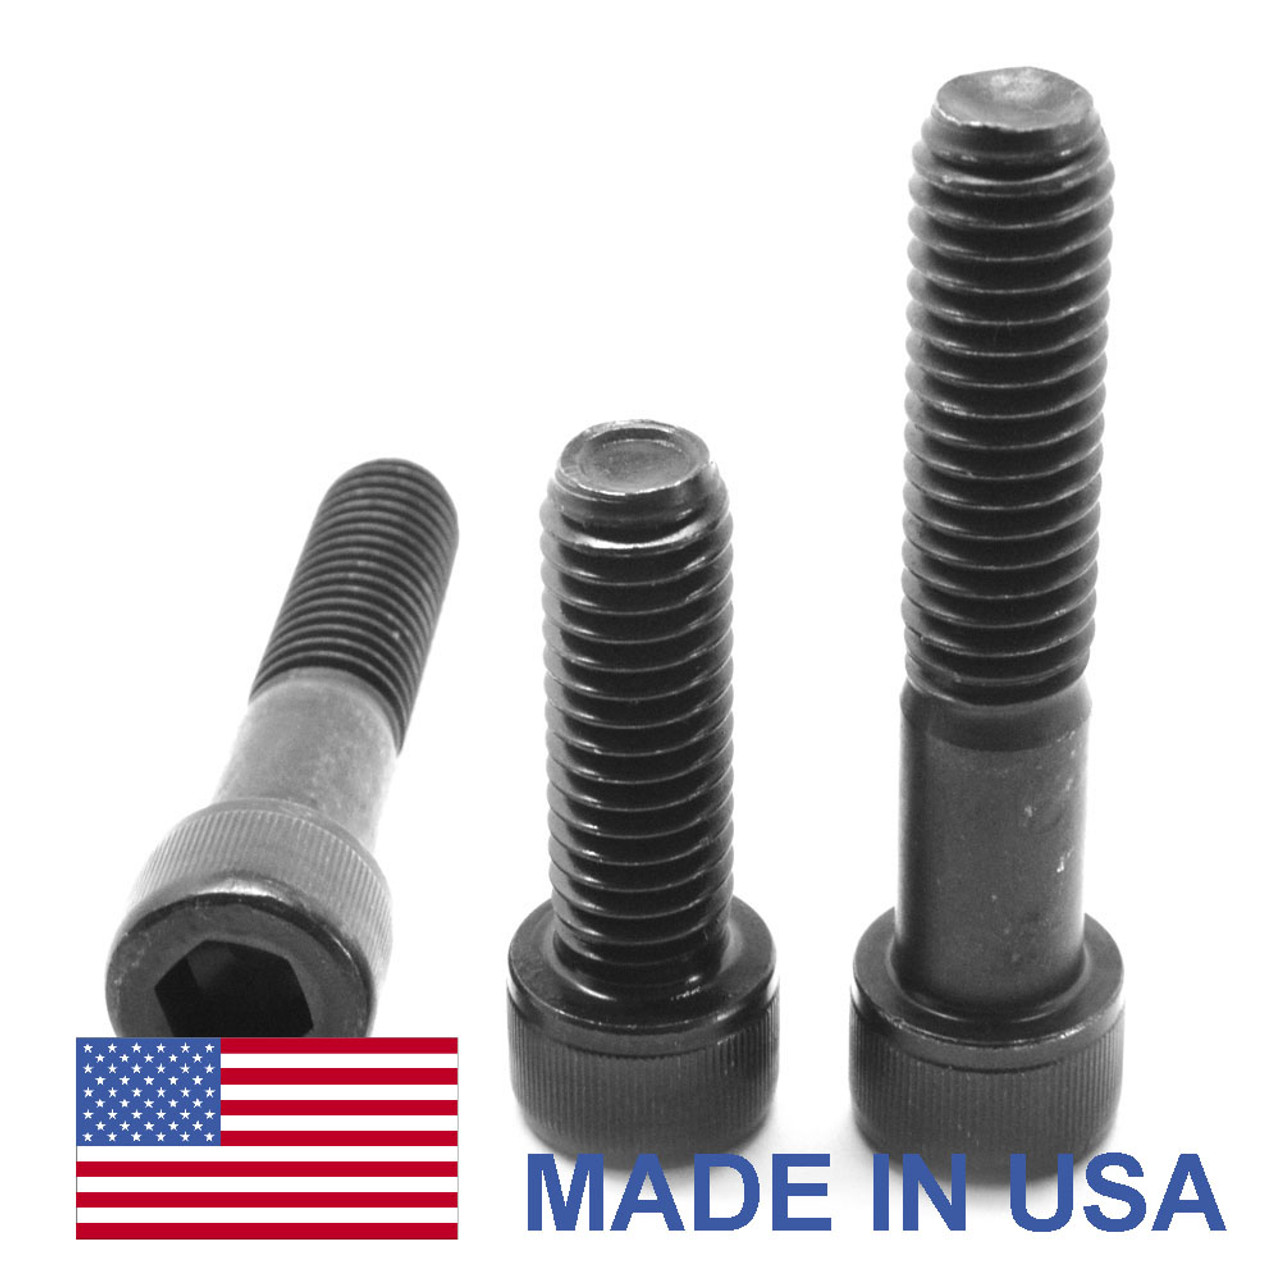 M10 x 1.50 x 35 MM Coarse Thread Socket Head Cap Screw - USA Alloy Steel Thermal Black Oxide